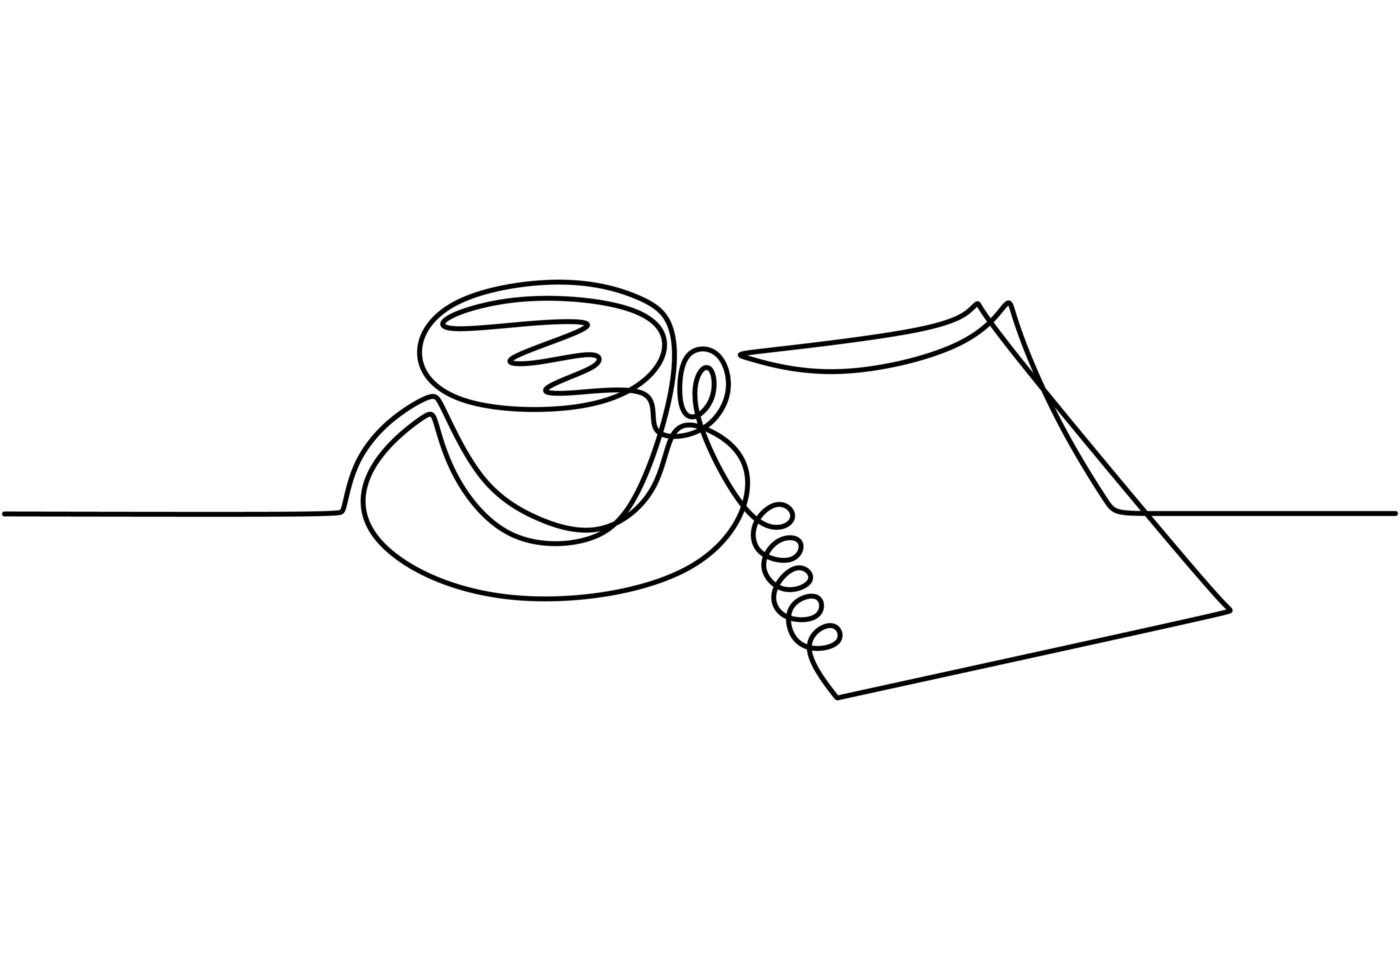 dessin au trait continu, vecteur de café et papier symbole de travail et de créativité. conception de minimalisme avec simplicité dessinés à la main isolé sur fond blanc.